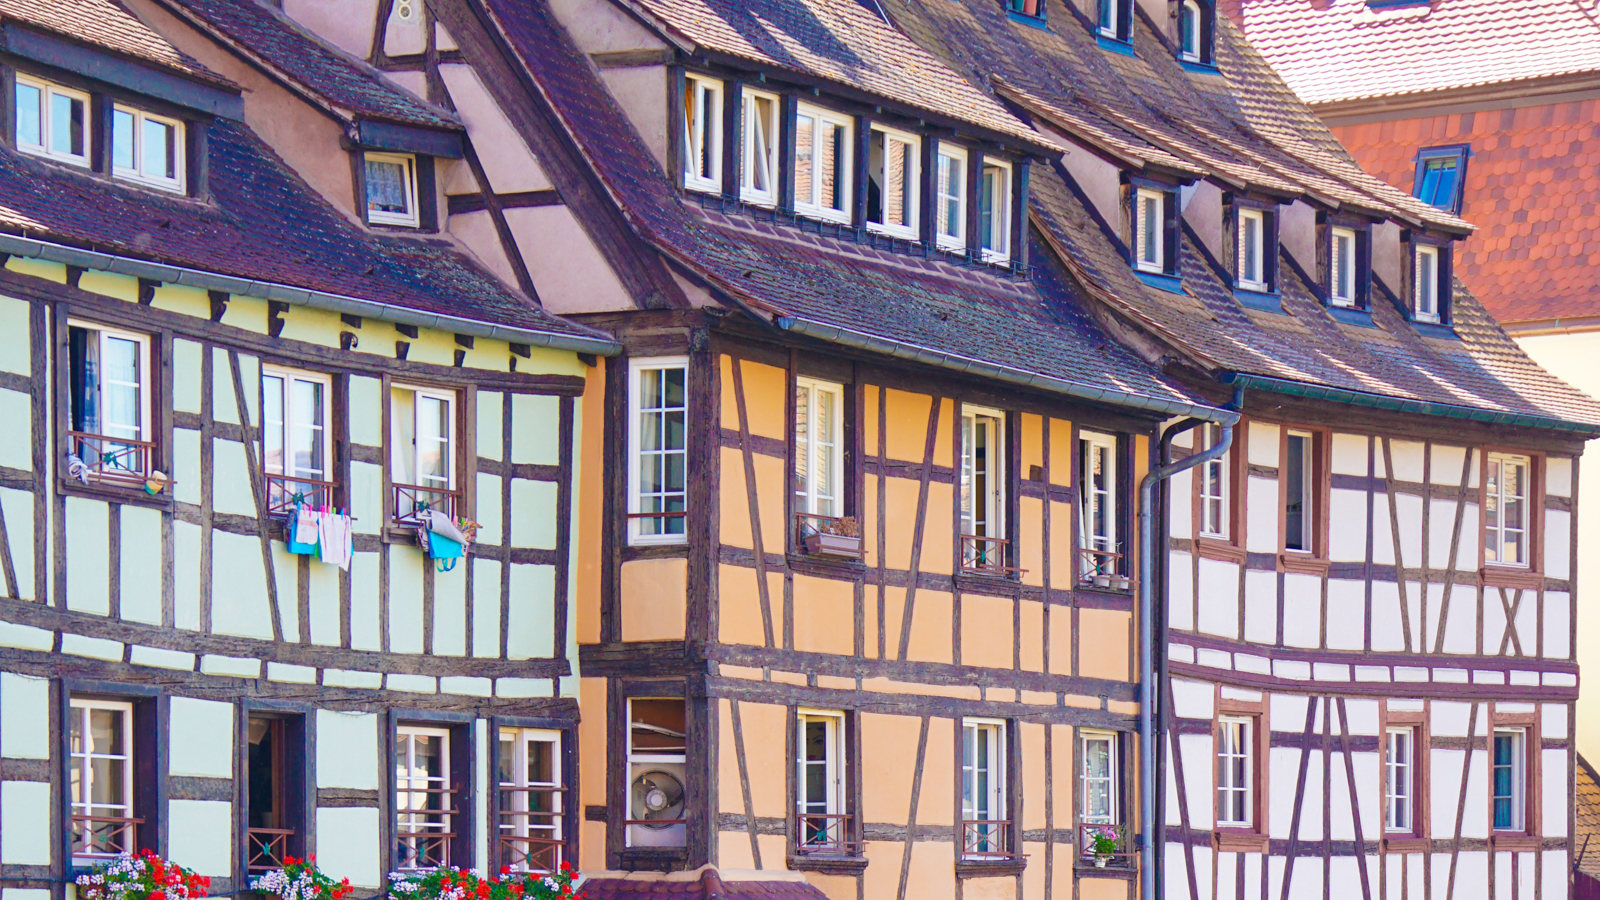 Maisons de la Petite-France quartier ancien de Strasbourg en Grand Est